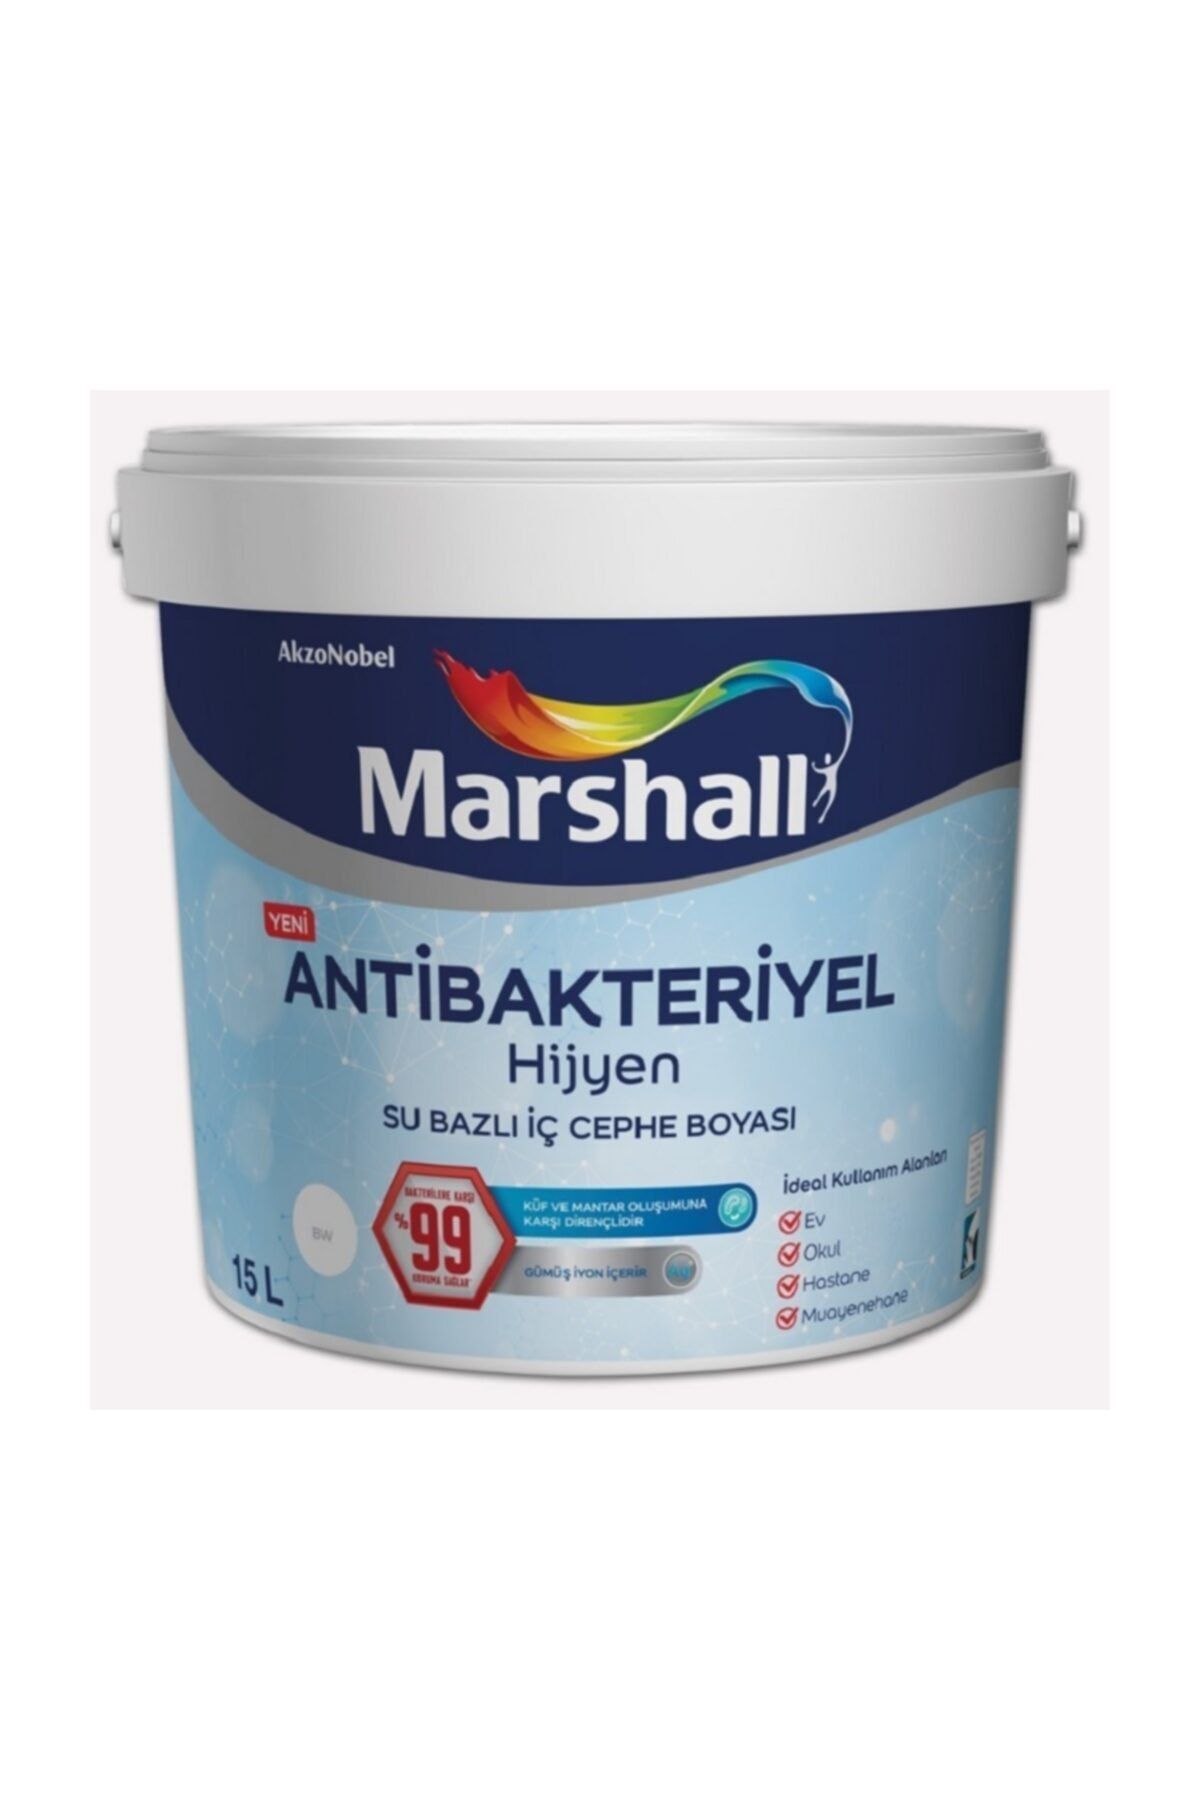 Marshall Antibakteriyel Hijyen 15 Lt Müge